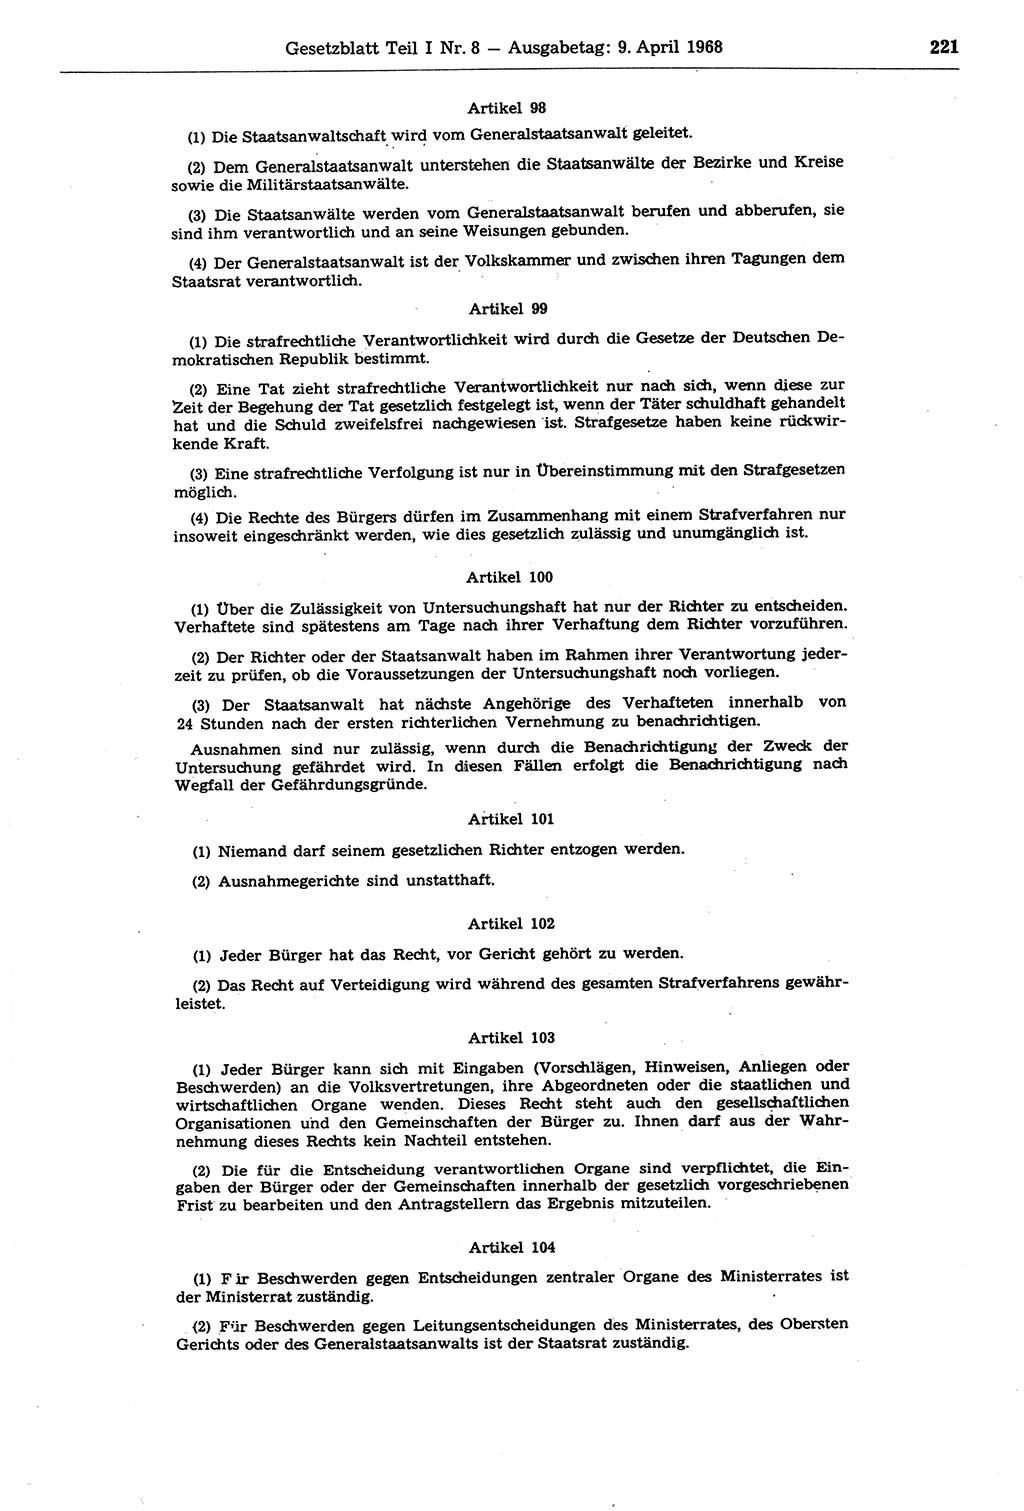 Gesetzblatt (GBl.) der Deutschen Demokratischen Republik (DDR) Teil Ⅰ 1968, Seite 221 (GBl. DDR Ⅰ 1968, S. 221)